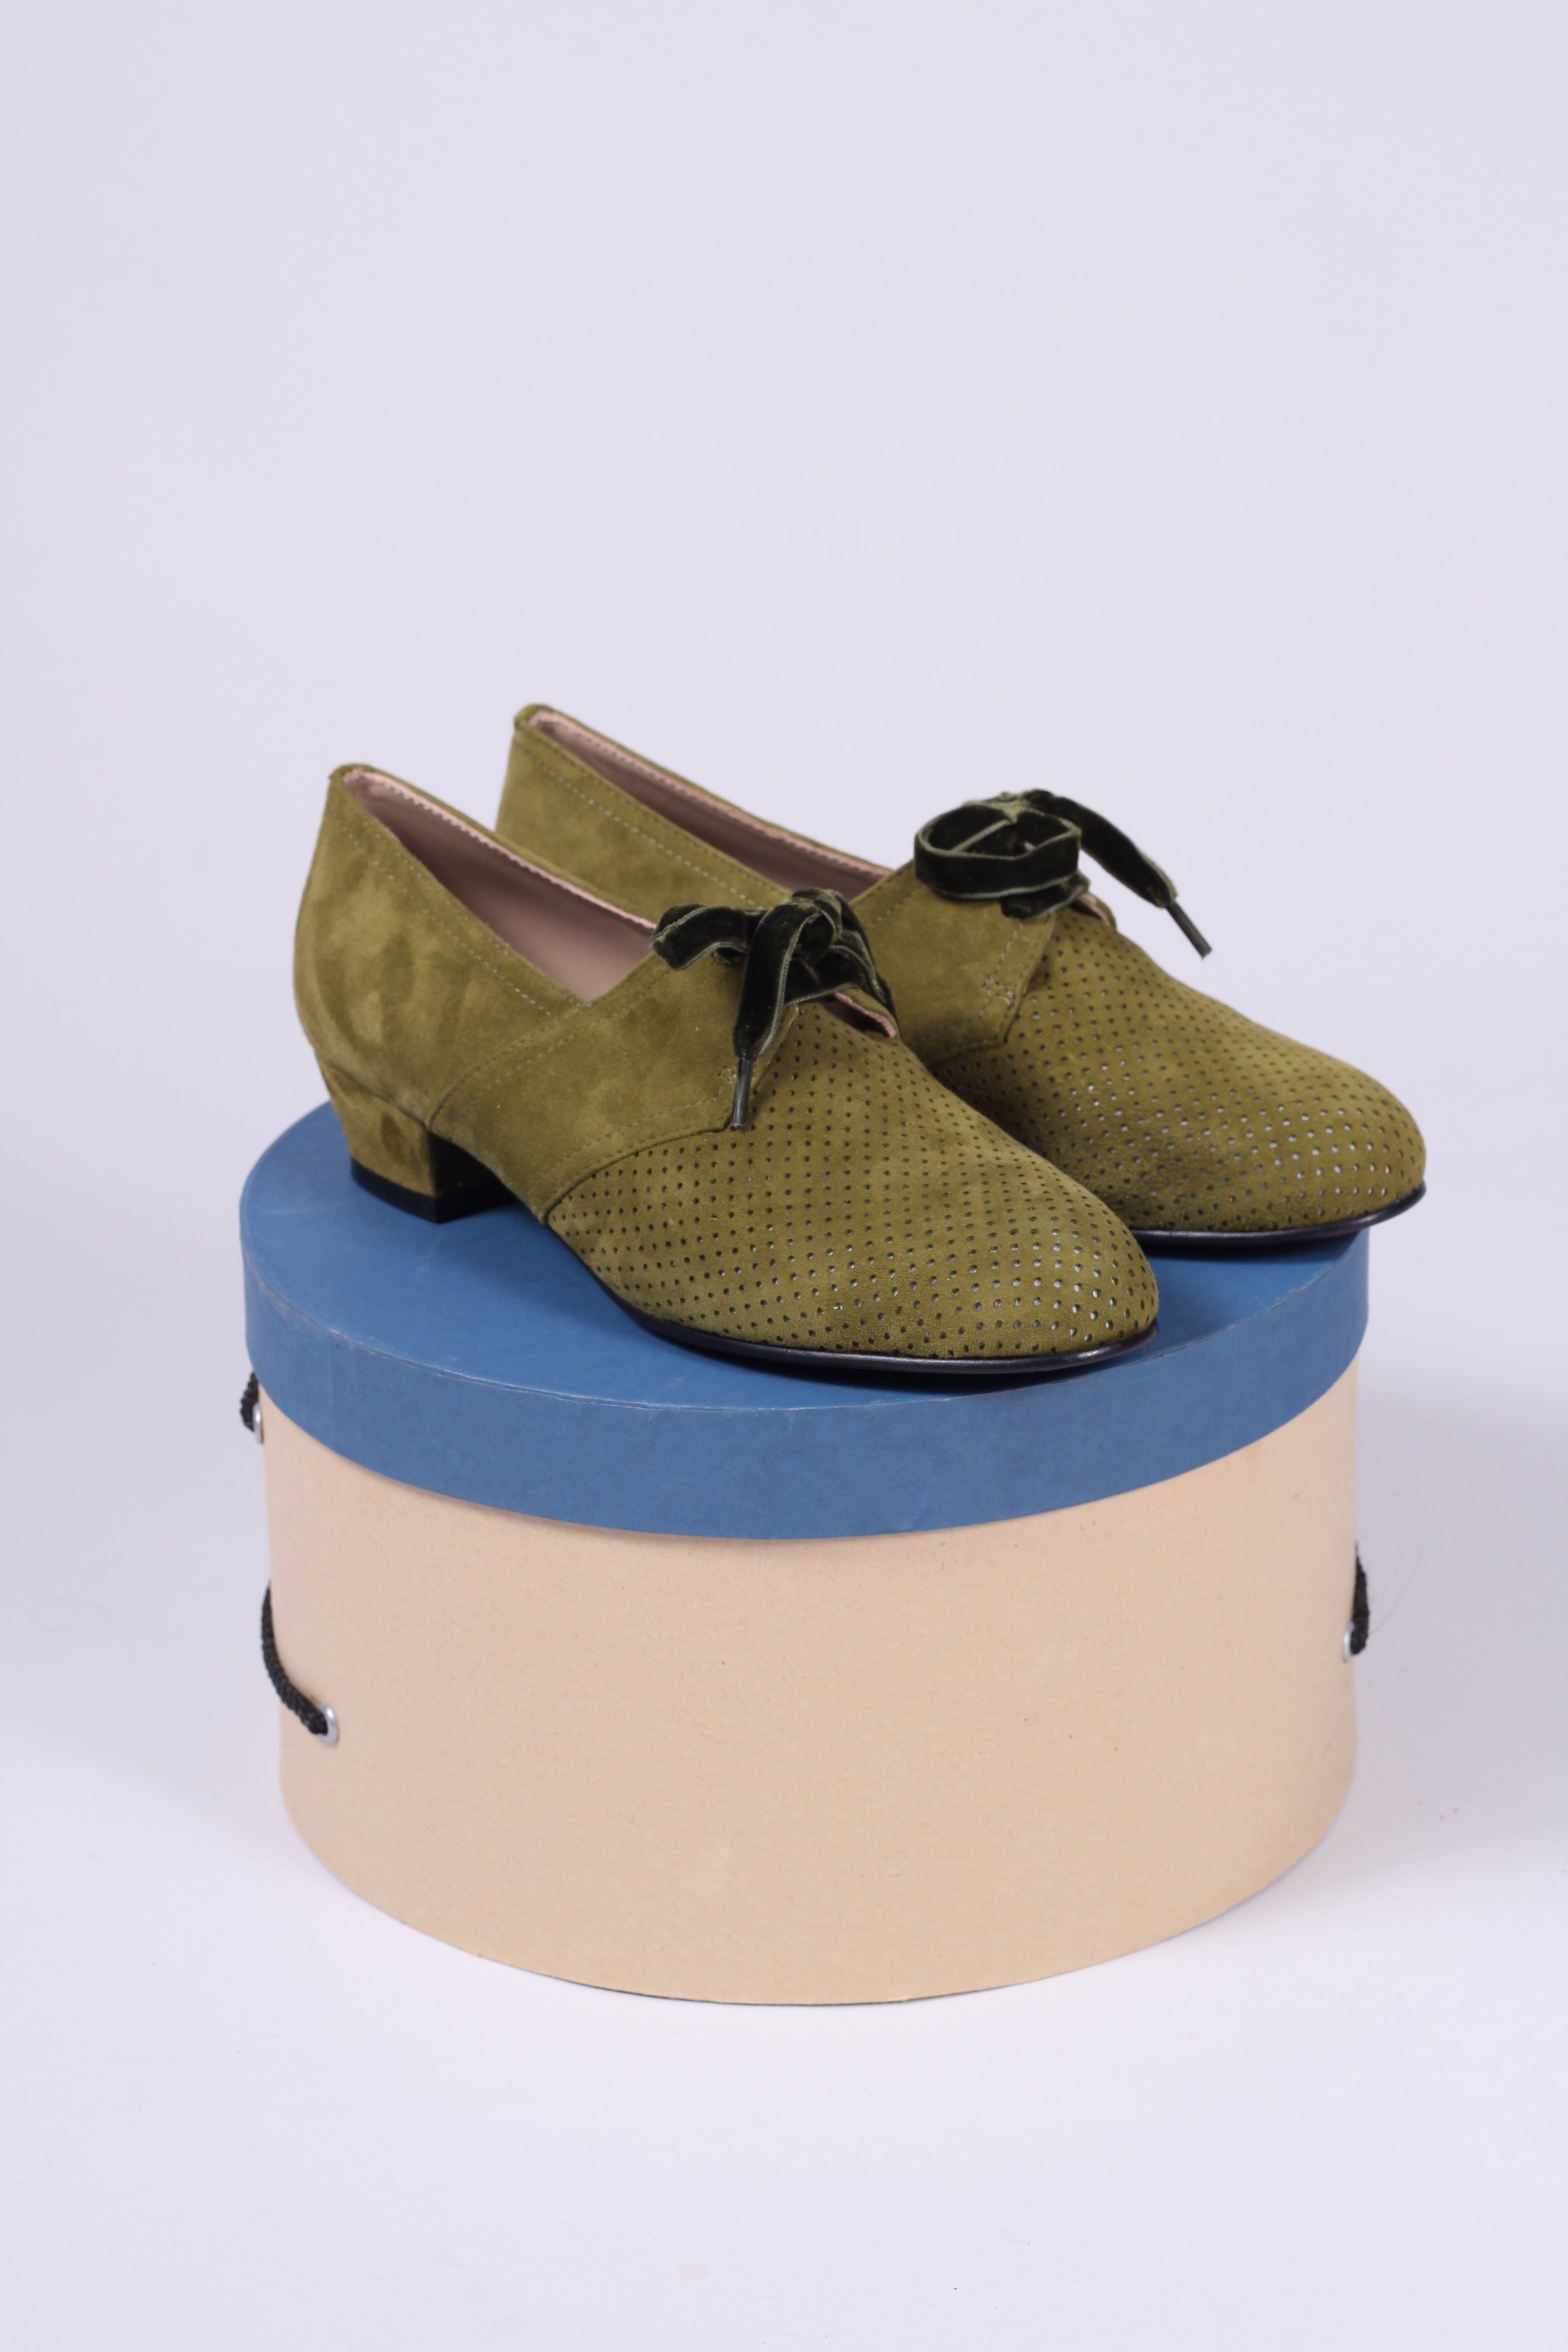 1940'er vintage style Oxford sko i ruskind - Lav hæl - Støvet grøn - Esther